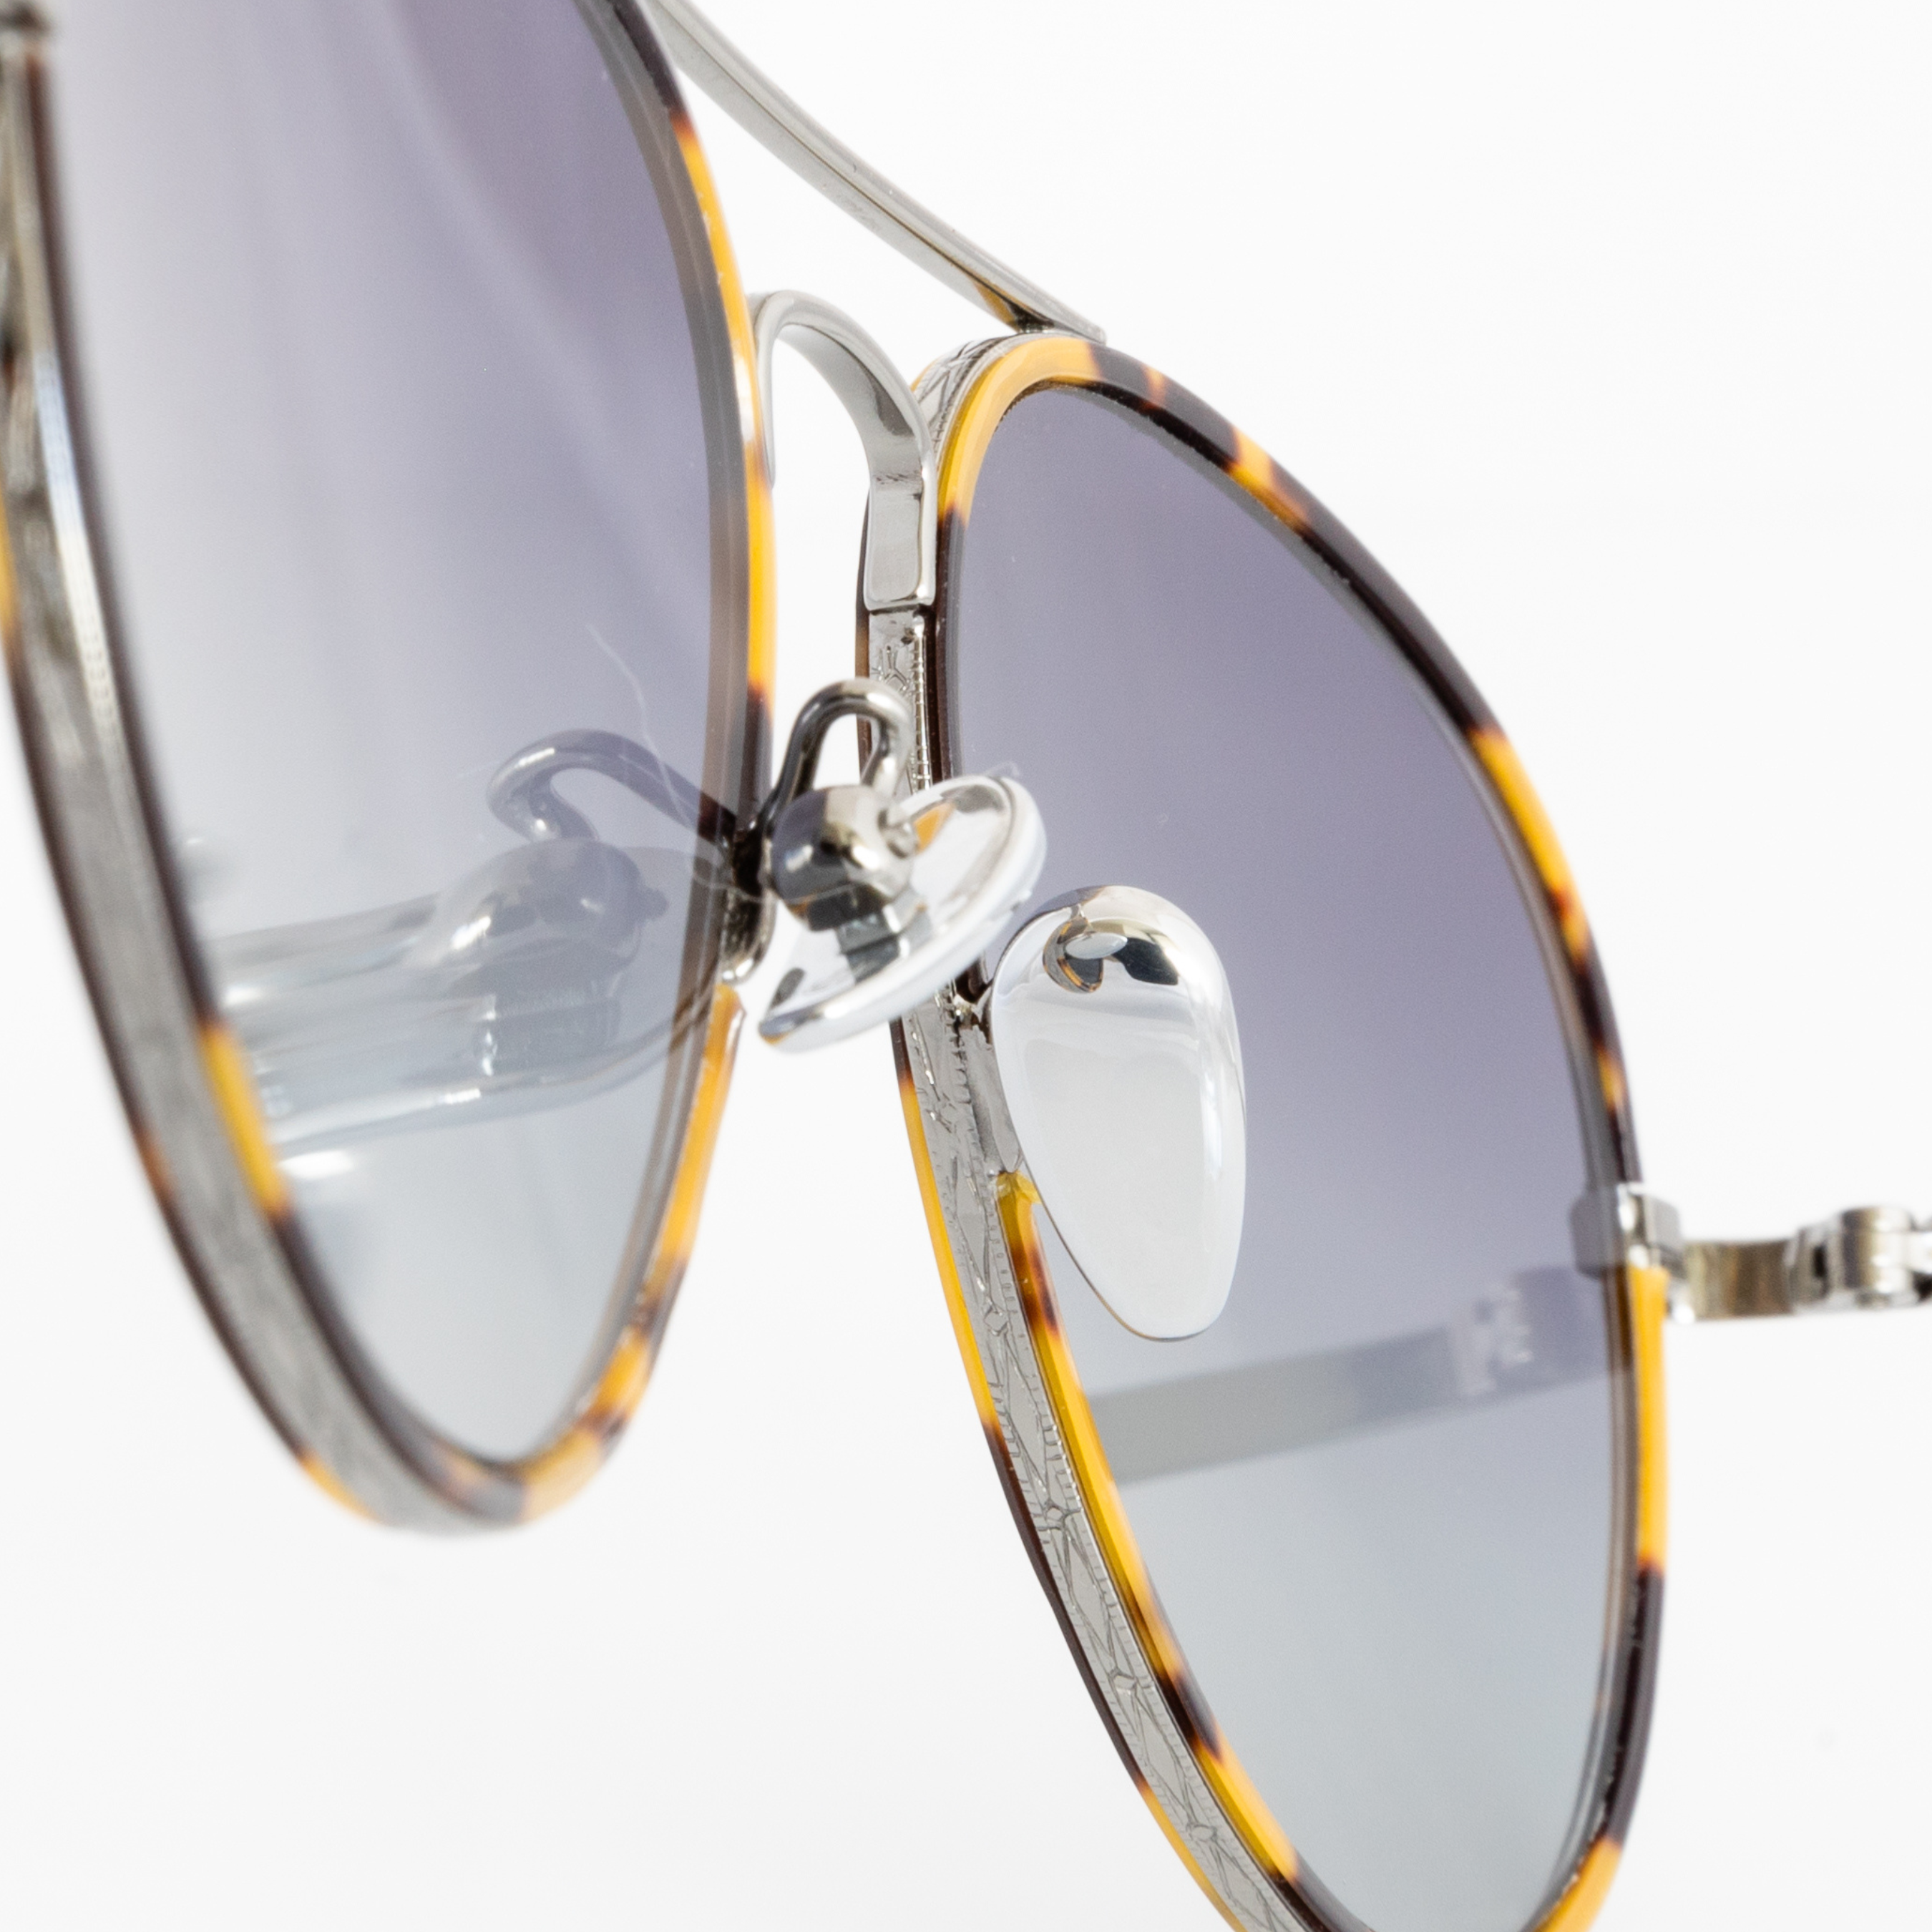 Memorí Aviator sunglasses. Small batch artisan sunglasses for smaller faces. Narrow width aviators. Macro view shows detailing. 